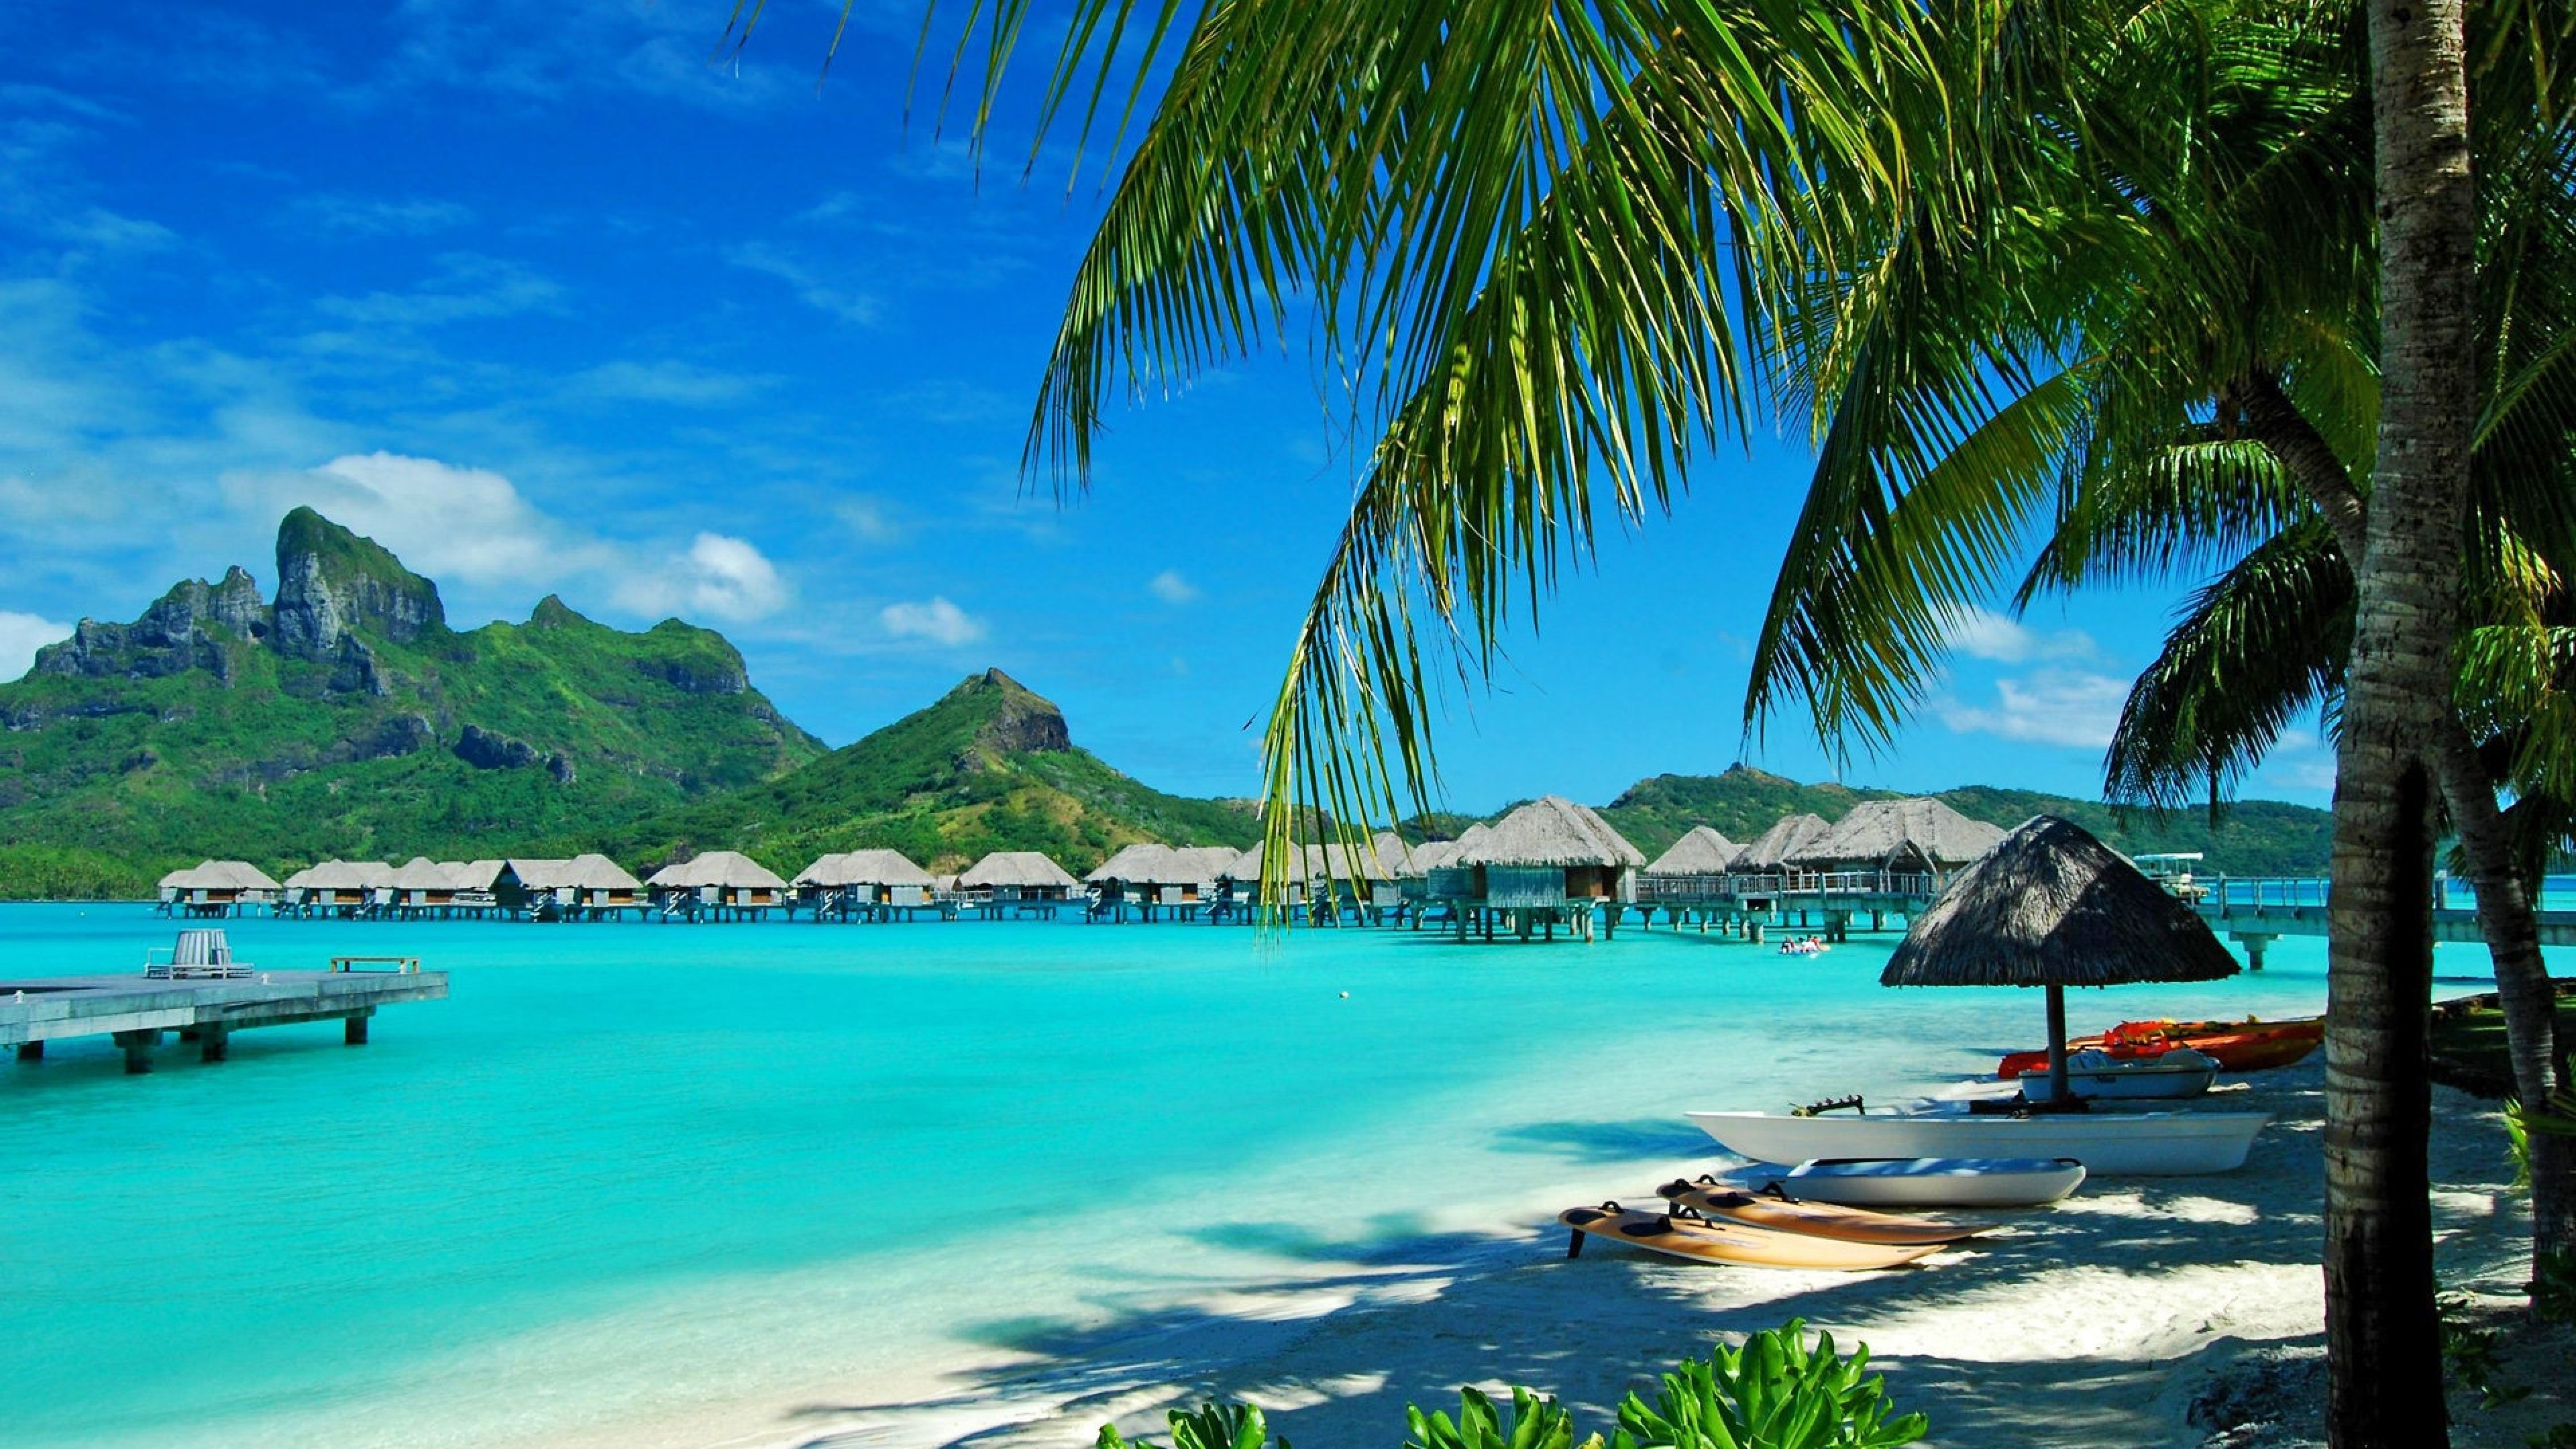 Гавайские острова - один из ТОП-5 популярных курортов мира